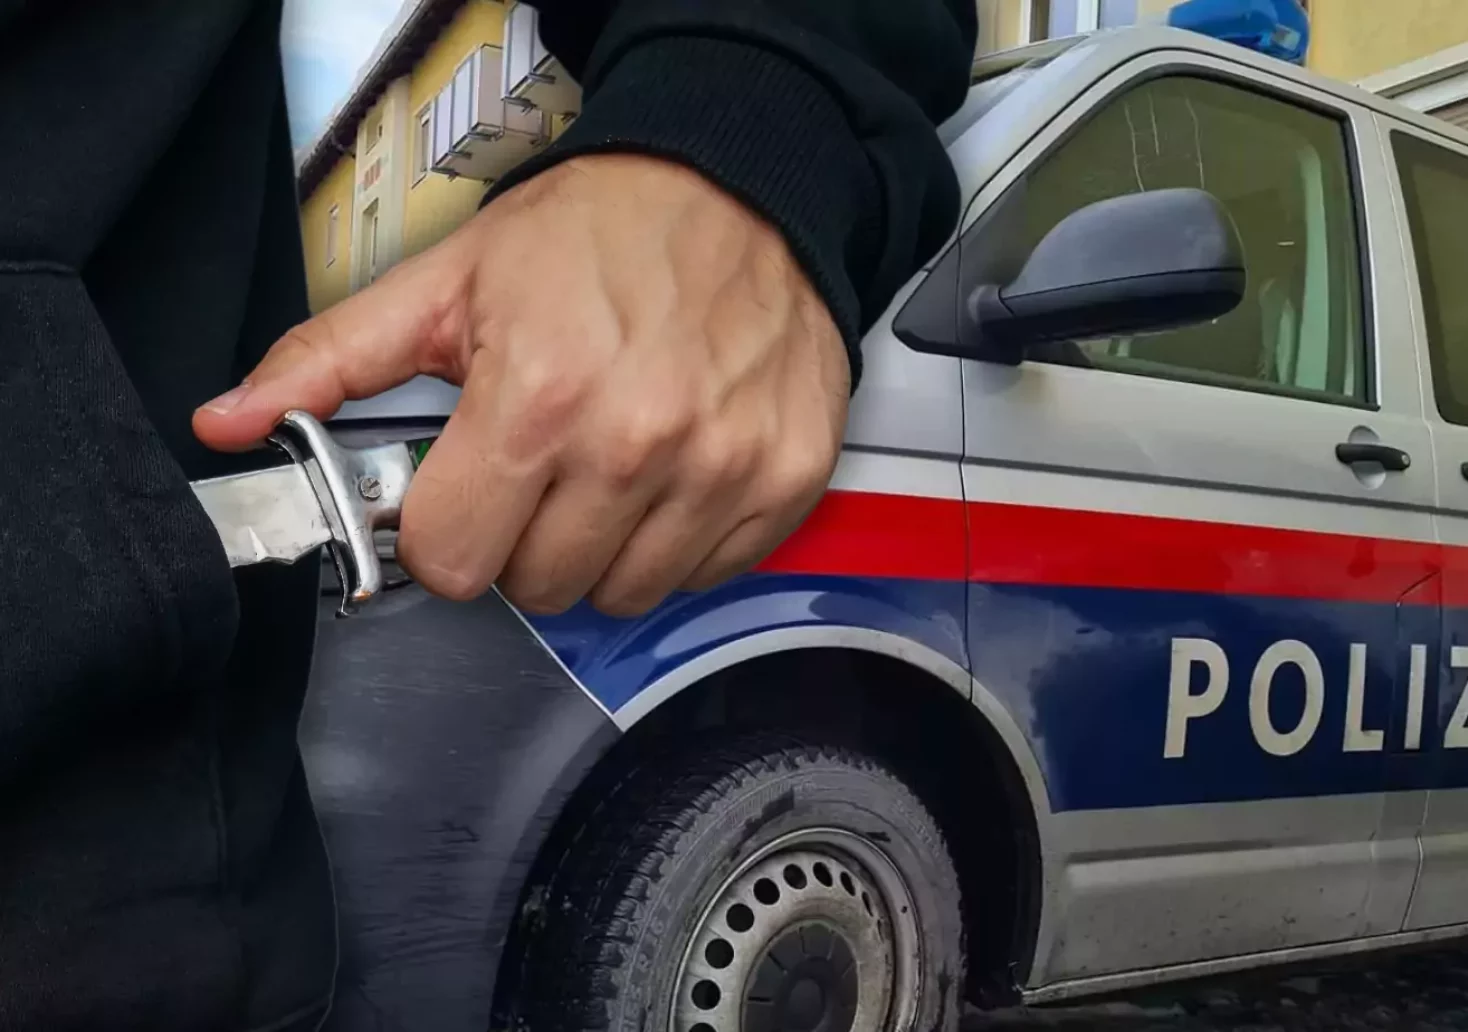 Bild auf 5min.at zeigt einen Mann mit Messer und ein Polizeiauto.